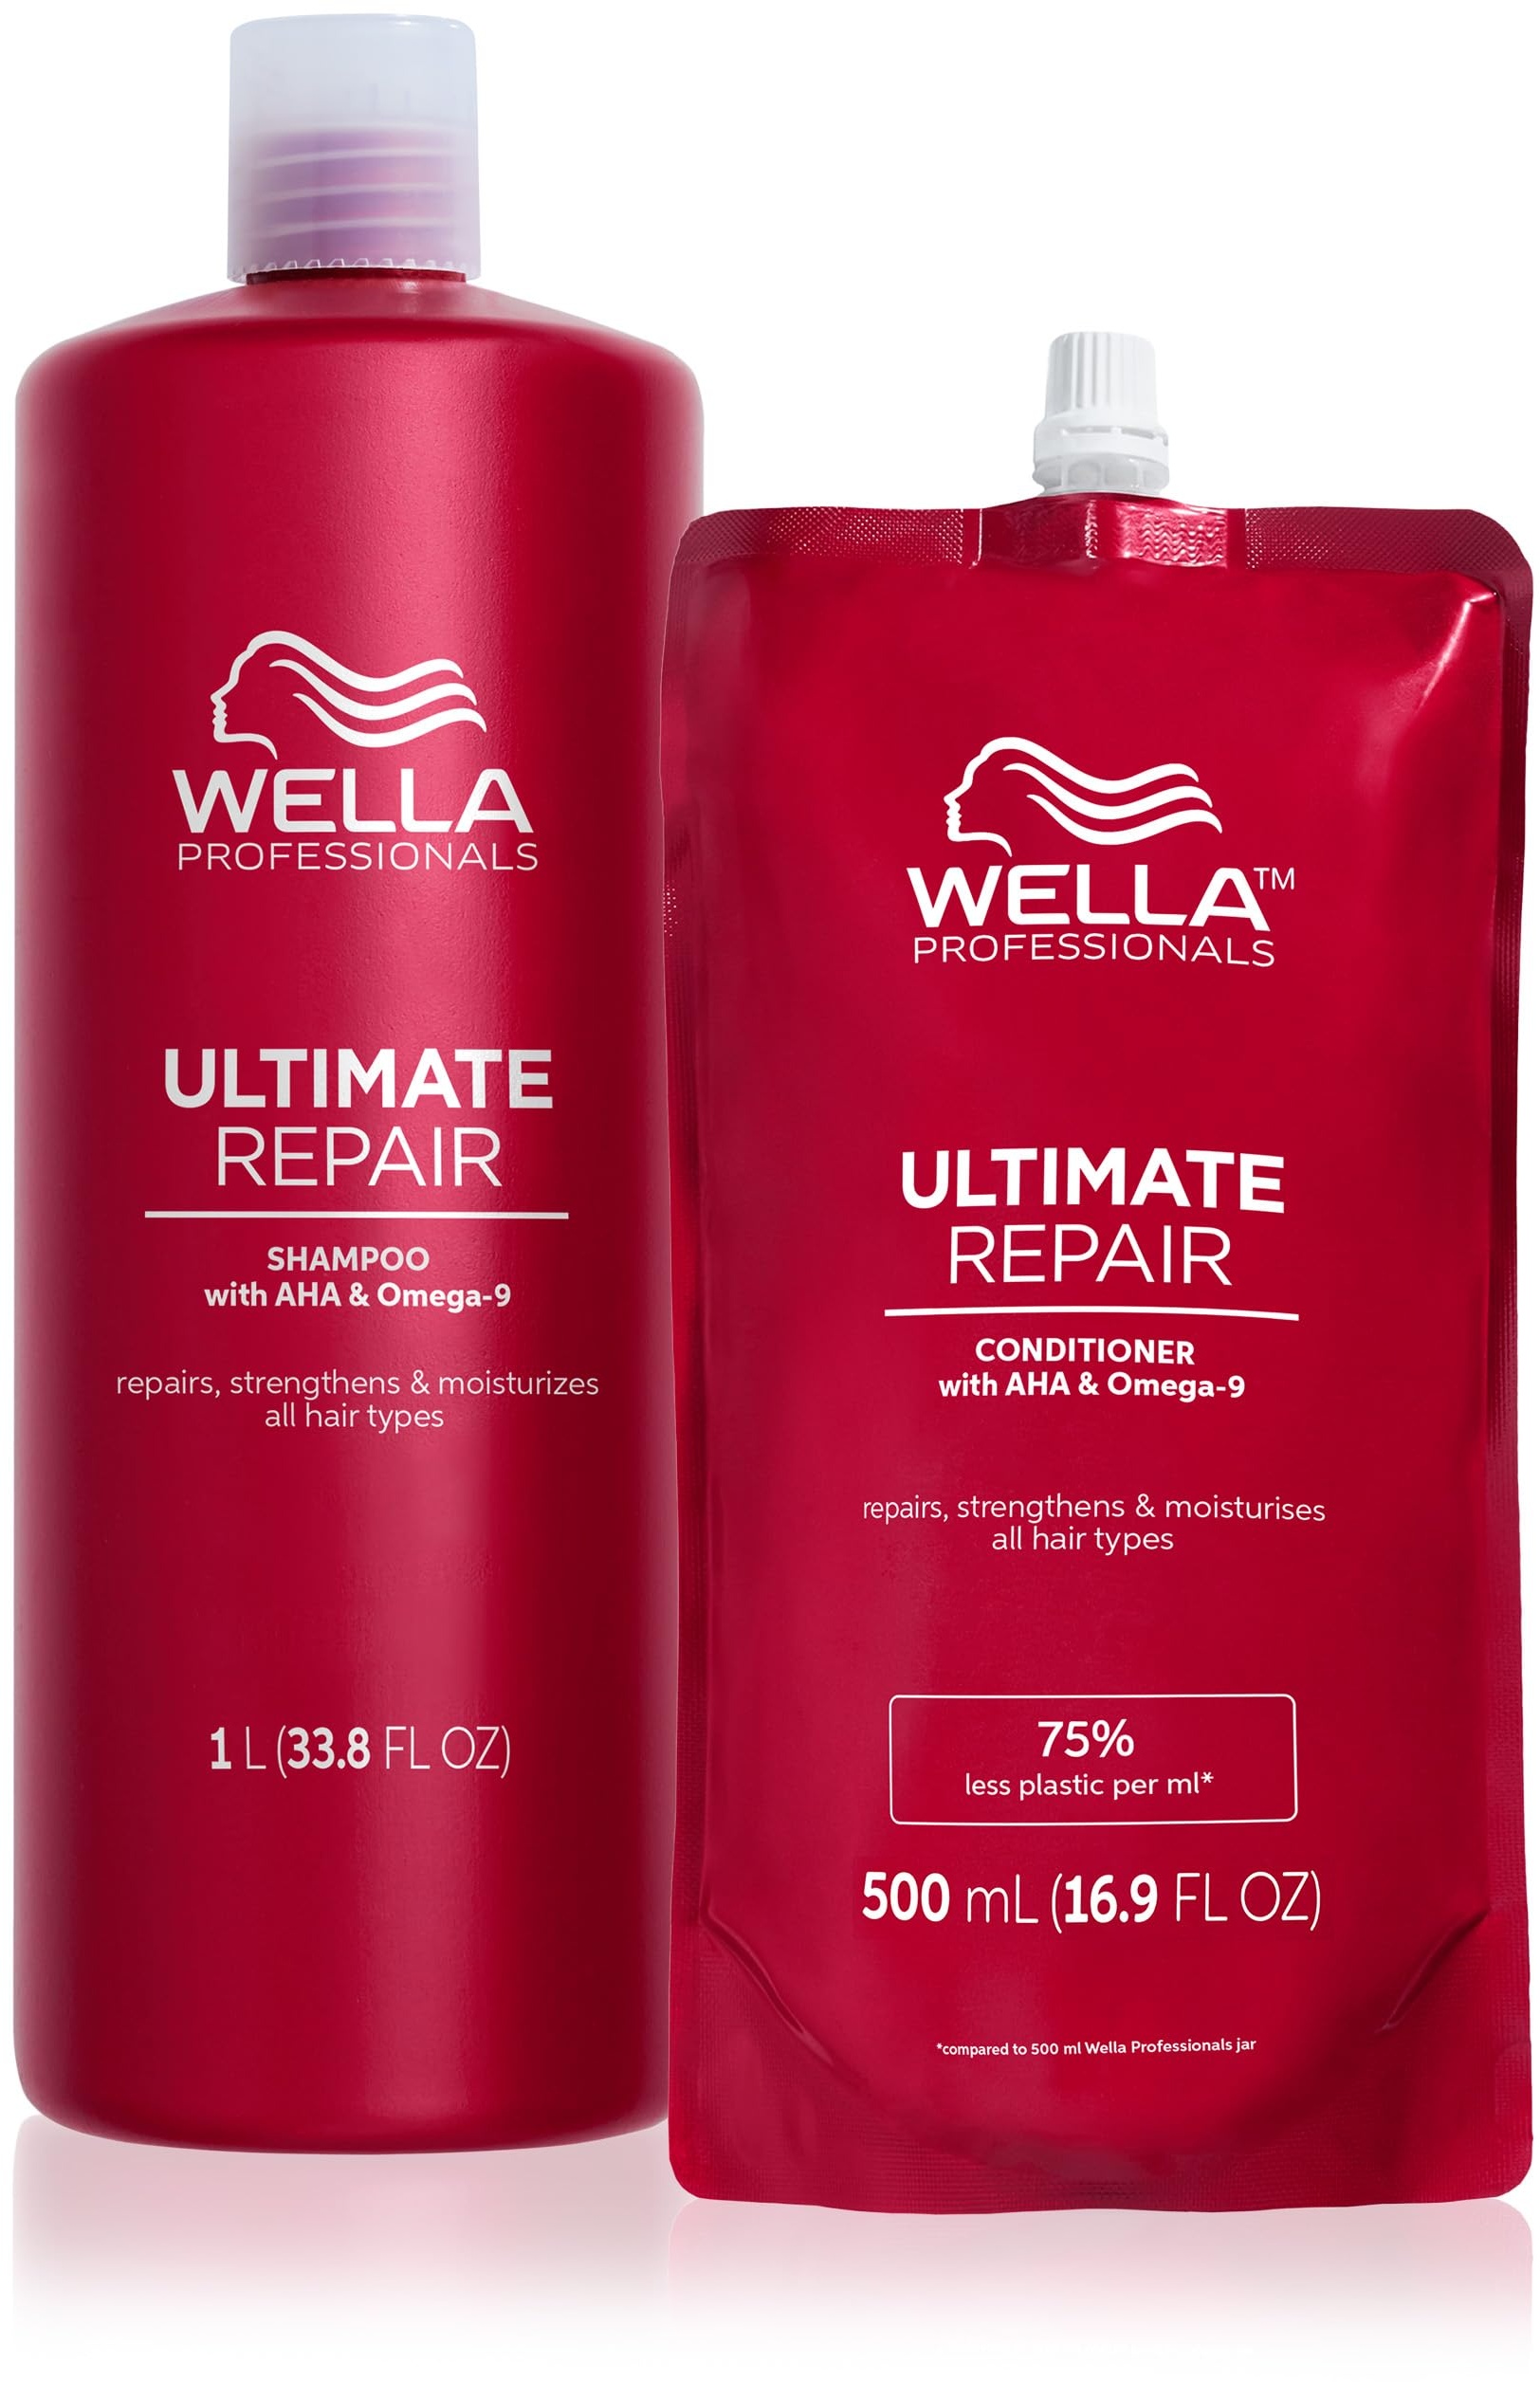 Wella Professionals Ultimate Repair Vorteils-Set – Repair Shampoo zur Tiefenreinigung & reparierende Spülung mit Omega 9 – 1 L Feuchtigkeitsshampoo & 500 ml Conditioner Refill